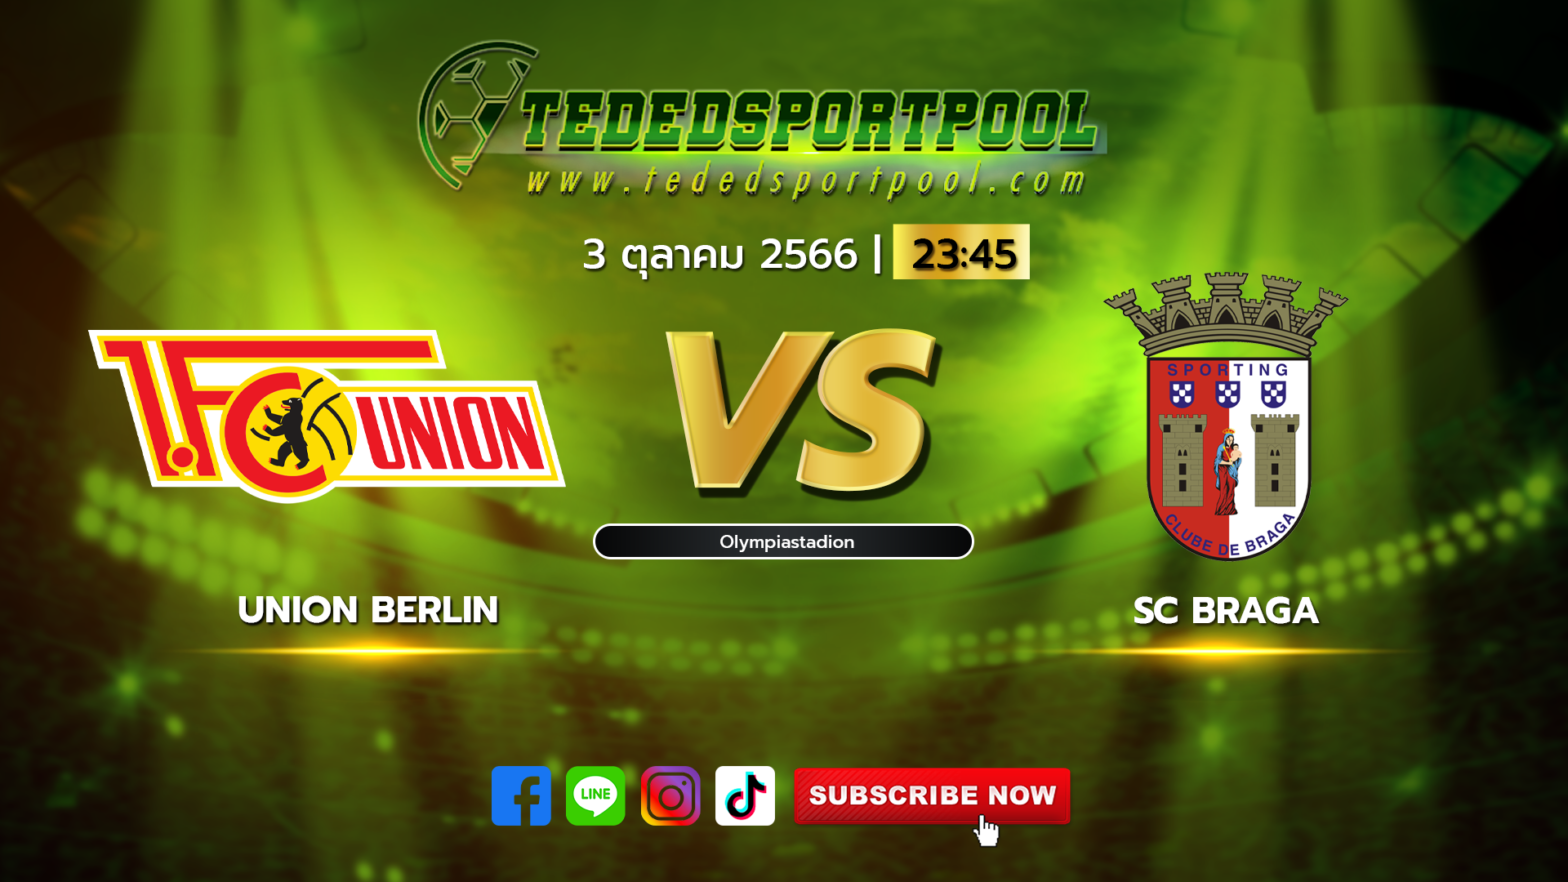 Union_Berlin_vs_SC_Braga